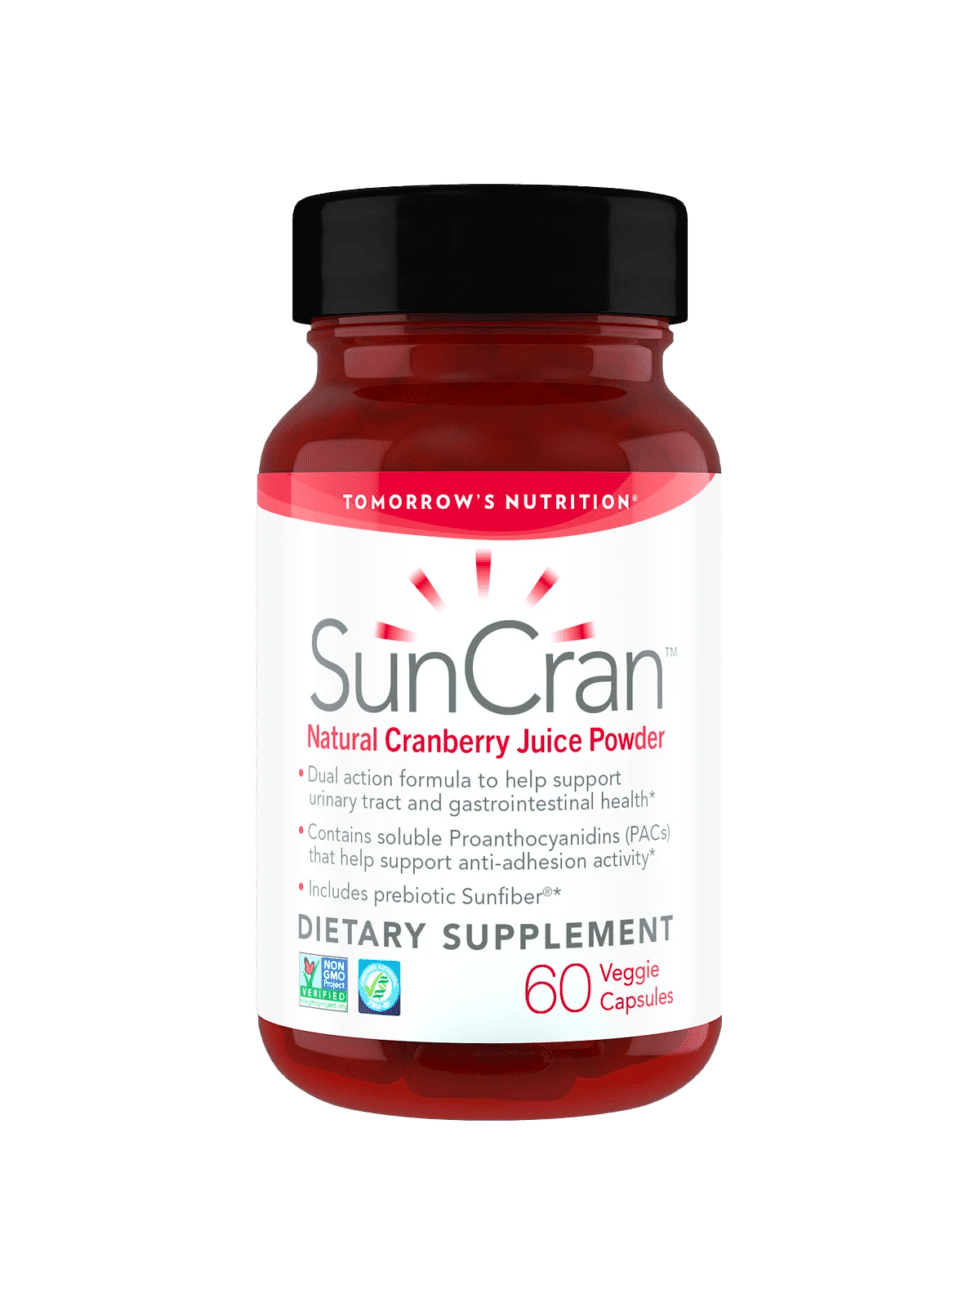 Tomorrow's Nutrition SunCran